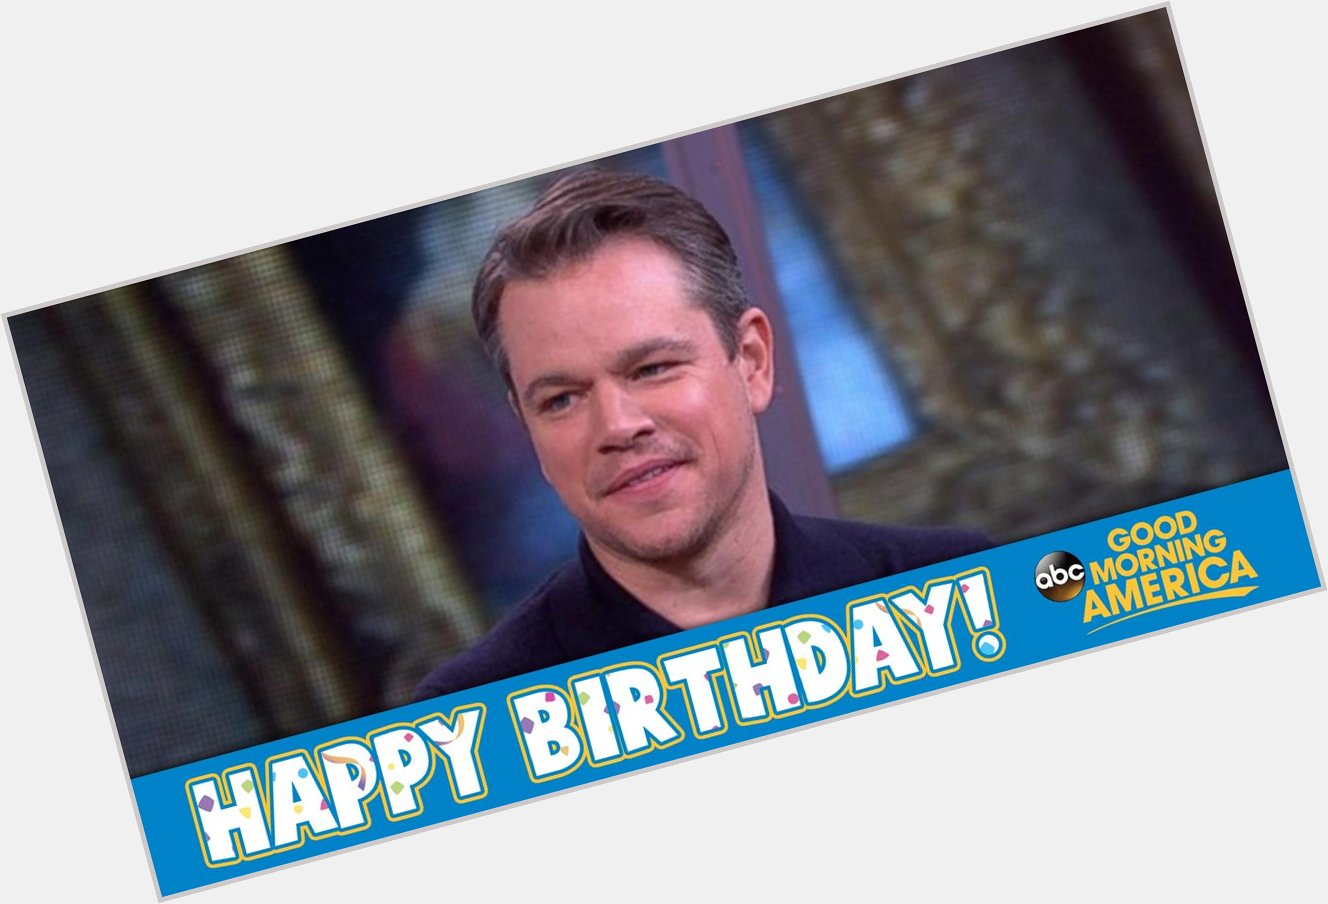 Happy Birthday to Award winner Matt Damon!  What is your favorite Matt Damon movie? 